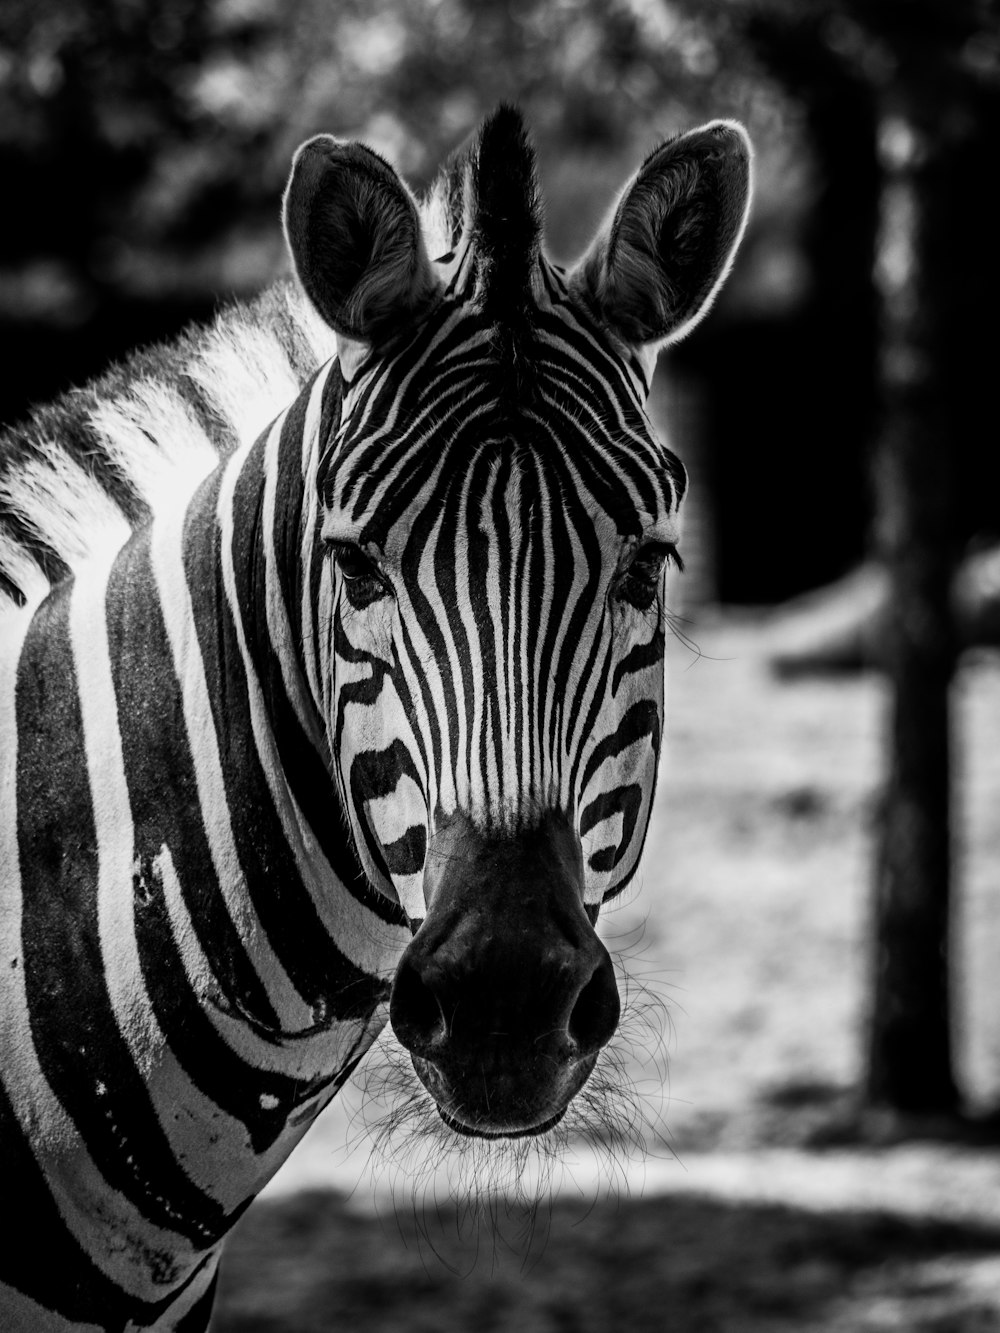 grayscale photo of zebra in field